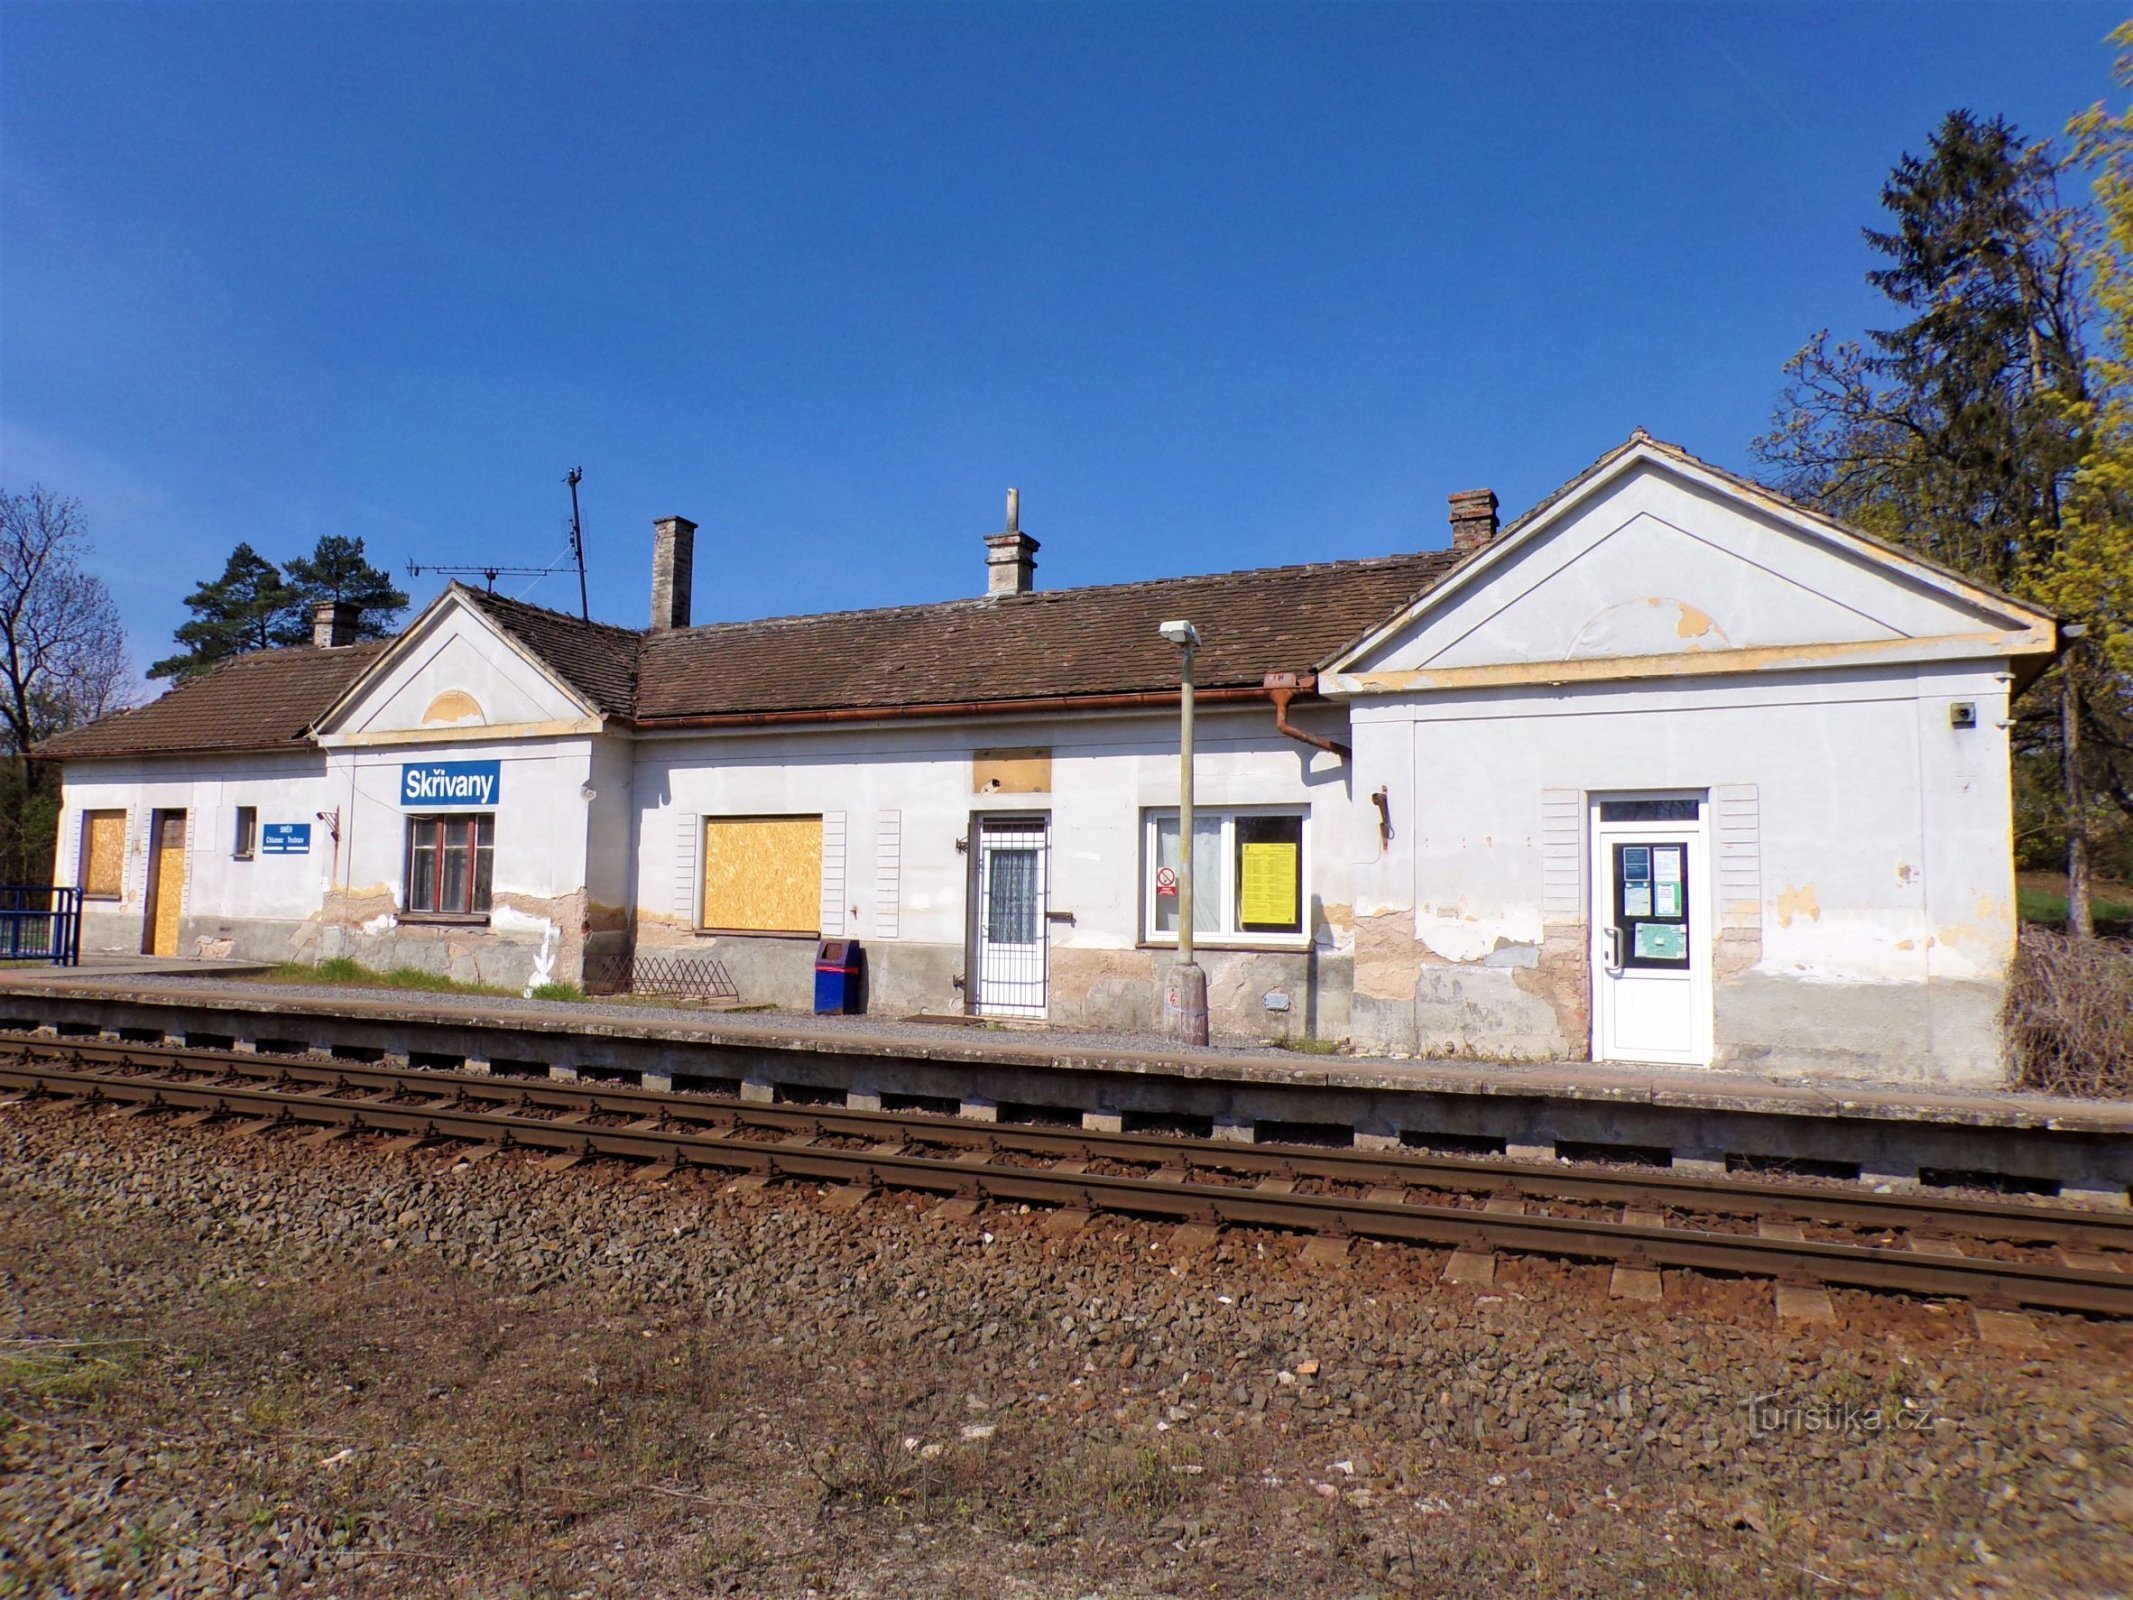 Jernbanestation (Skrivany, 30.4.2021/XNUMX/XNUMX)